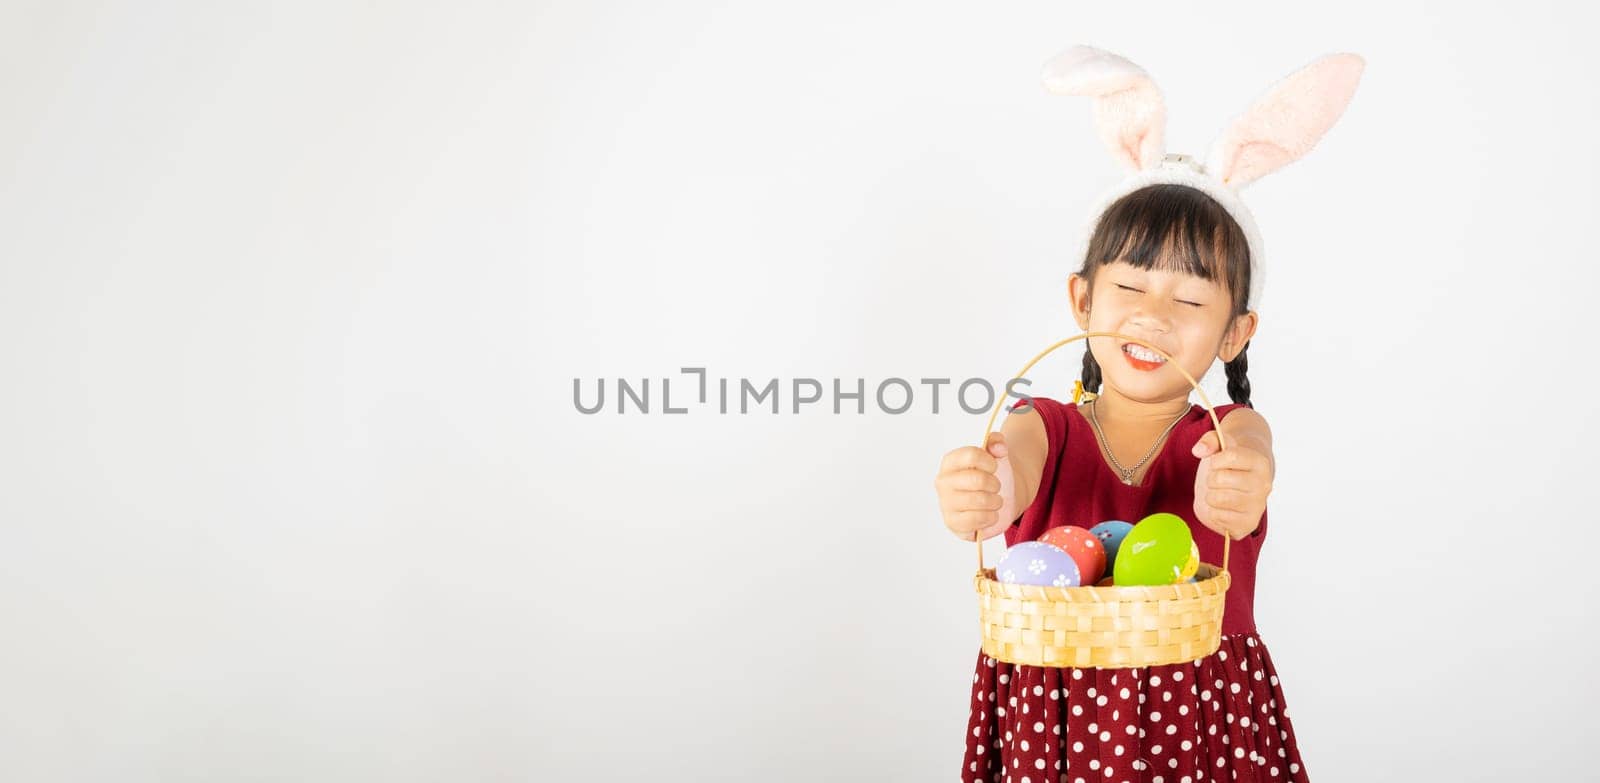 Happy Easter Day by Sorapop